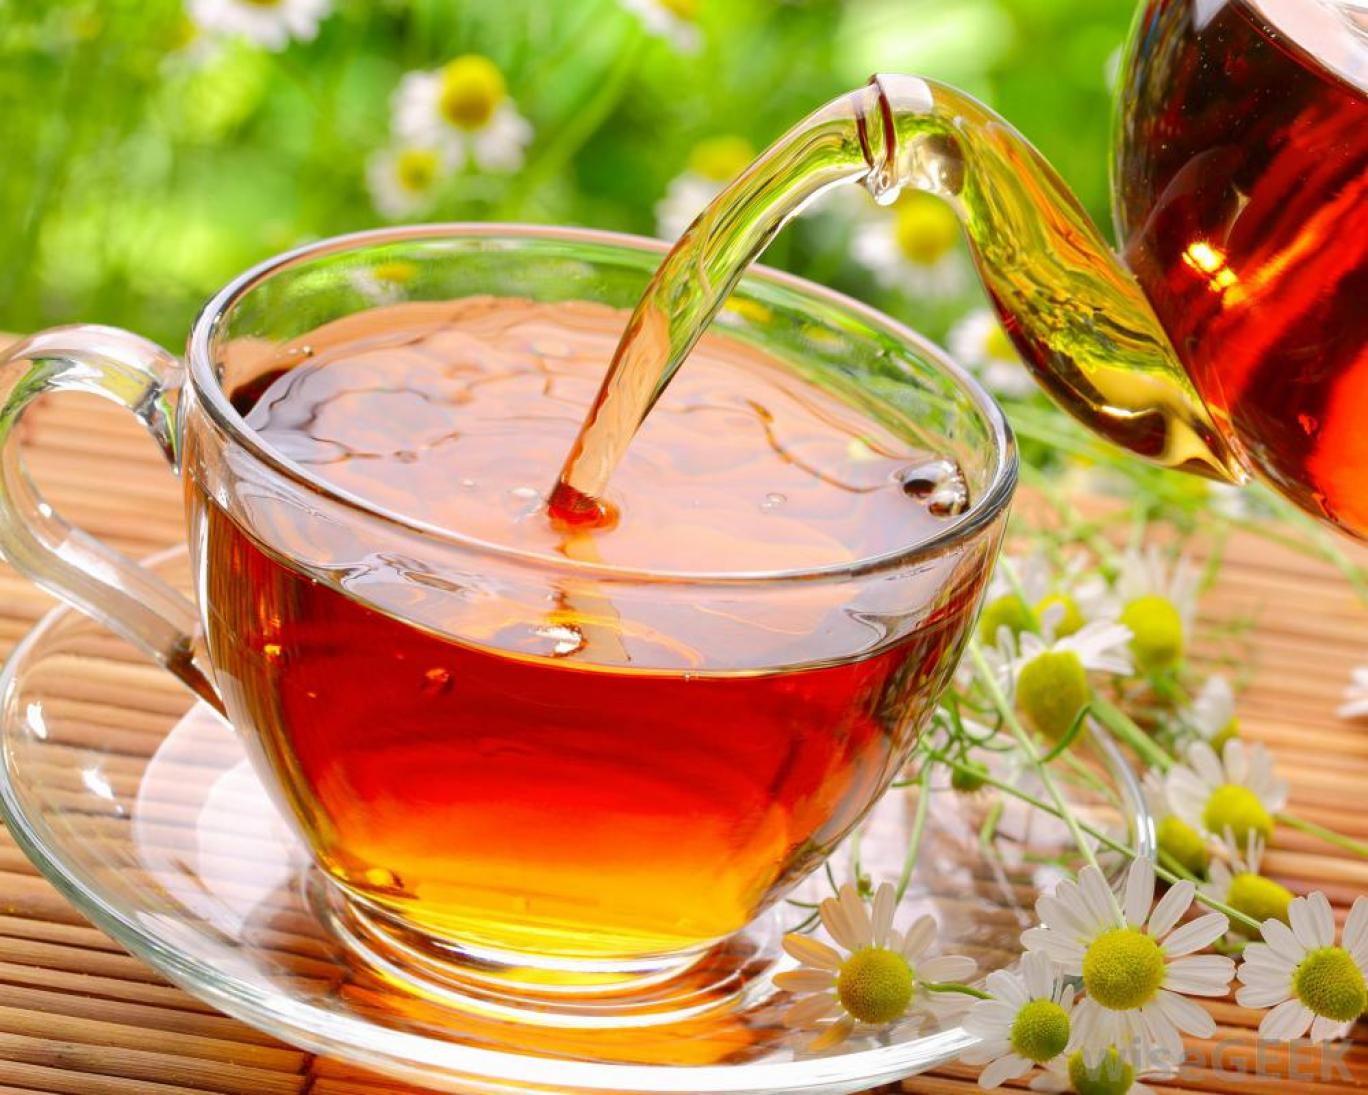 ۹ دلیل برای پرهیز از مصرف بیش از حد چای